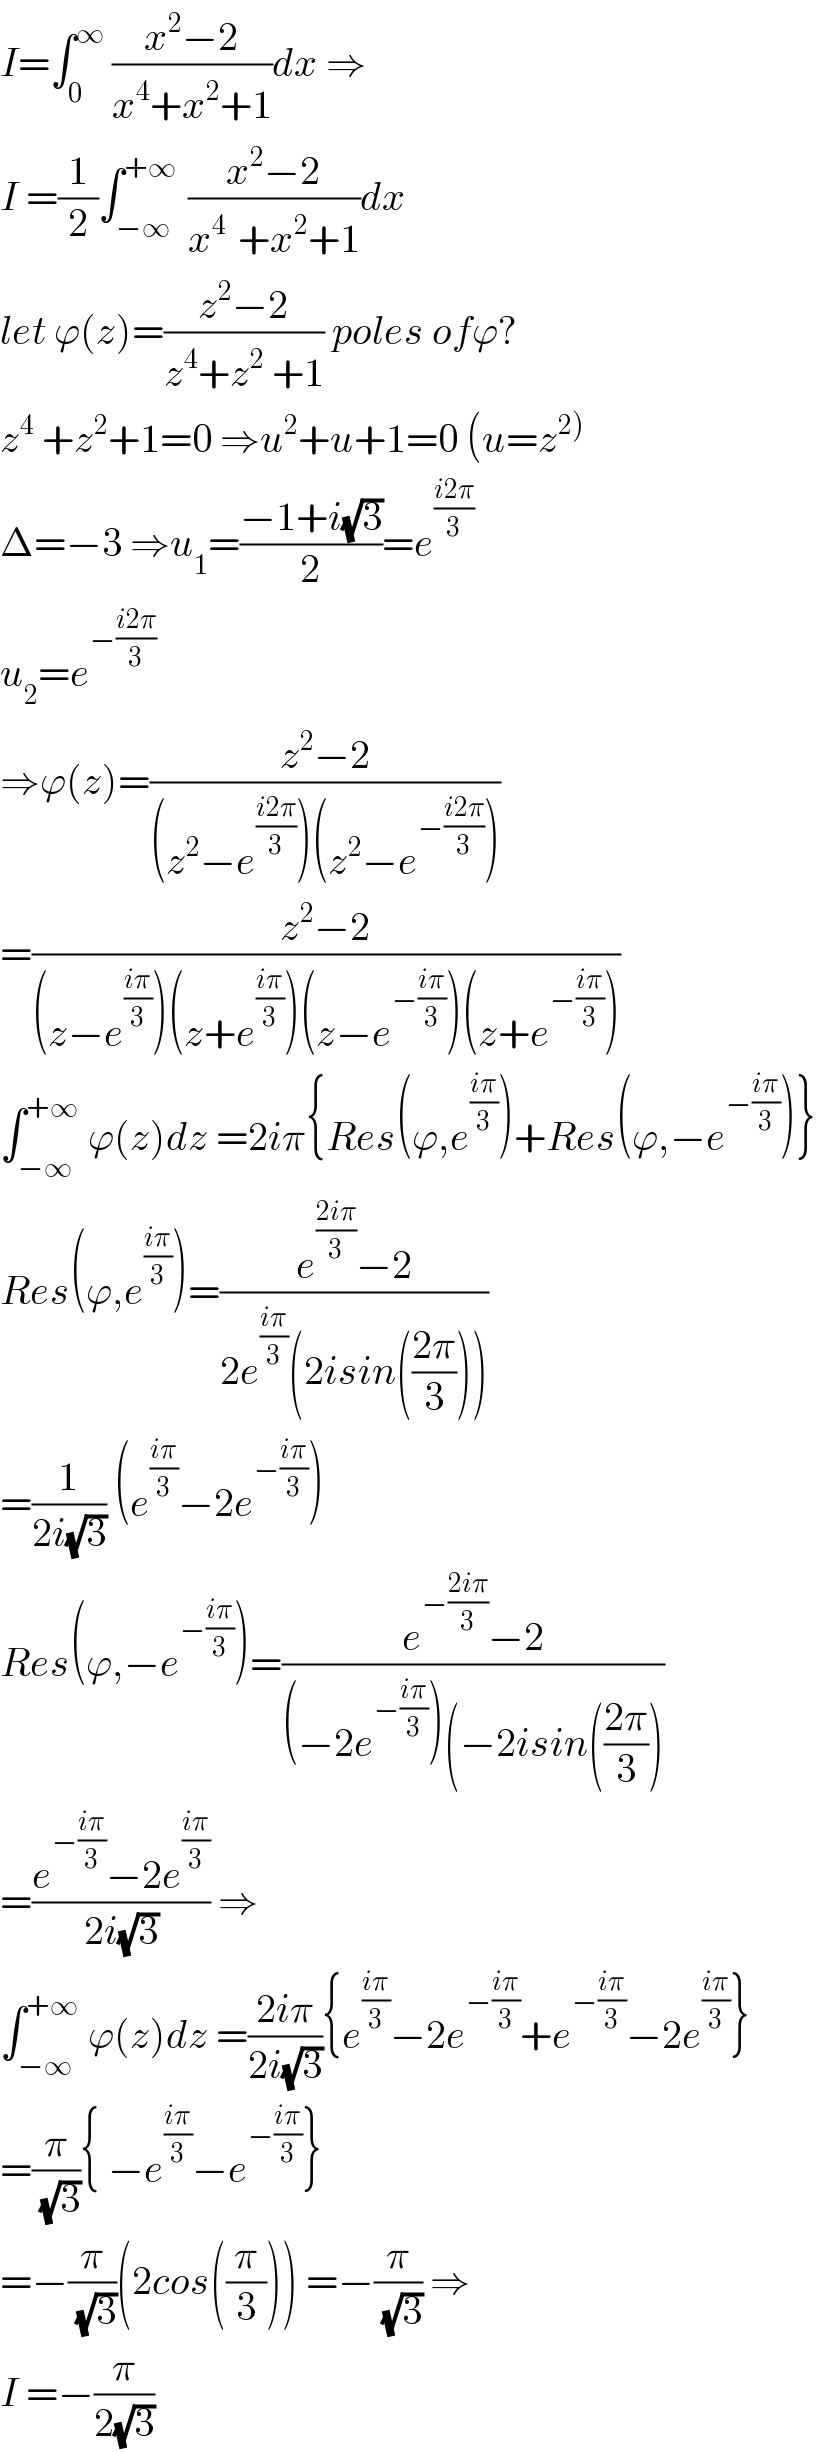 I=∫_0 ^∞  ((x^2 −2)/(x^4 +x^2 +1))dx ⇒  I =(1/2)∫_(−∞) ^(+∞ )  ((x^2 −2)/(x^(4 )  +x^2 +1))dx  let ϕ(z)=((z^2 −2)/(z^4 +z^2  +1)) poles ofϕ?  z^4  +z^2 +1=0 ⇒u^2 +u+1=0 (u=z^(2))   Δ=−3 ⇒u_1 =((−1+i(√3))/2)=e^((i2π)/3)   u_2 =e^(−((i2π)/3))   ⇒ϕ(z)=((z^2 −2)/((z^2 −e^((i2π)/3) )(z^2 −e^(−((i2π)/3)) )))  =((z^2 −2)/((z−e^((iπ)/3) )(z+e^((iπ)/3) )(z−e^(−((iπ)/3)) )(z+e^(−((iπ)/3)) )))  ∫_(−∞) ^(+∞)  ϕ(z)dz =2iπ{Res(ϕ,e^((iπ)/3) )+Res(ϕ,−e^(−((iπ)/3)) )}  Res(ϕ,e^((iπ)/3) )=((e^((2iπ)/3) −2)/(2e^((iπ)/3) (2isin(((2π)/3)))))  =(1/(2i(√3))) (e^((iπ)/3) −2e^(−((iπ)/3)) )  Res(ϕ,−e^(−((iπ)/3)) )=((e^(−((2iπ)/3)) −2)/((−2e^(−((iπ)/3)) )(−2isin(((2π)/3))))  =((e^(−((iπ)/3)) −2e^((iπ)/3) )/(2i(√3))) ⇒  ∫_(−∞) ^(+∞)  ϕ(z)dz =((2iπ)/(2i(√3))){e^((iπ)/3) −2e^(−((iπ)/3)) +e^(−((iπ)/3)) −2e^((iπ)/3) }  =(π/( (√3))){ −e^((iπ)/3) −e^(−((iπ)/3)) }  =−(π/( (√3)))(2cos((π/3))) =−(π/( (√3))) ⇒  I =−(π/(2(√3)))  